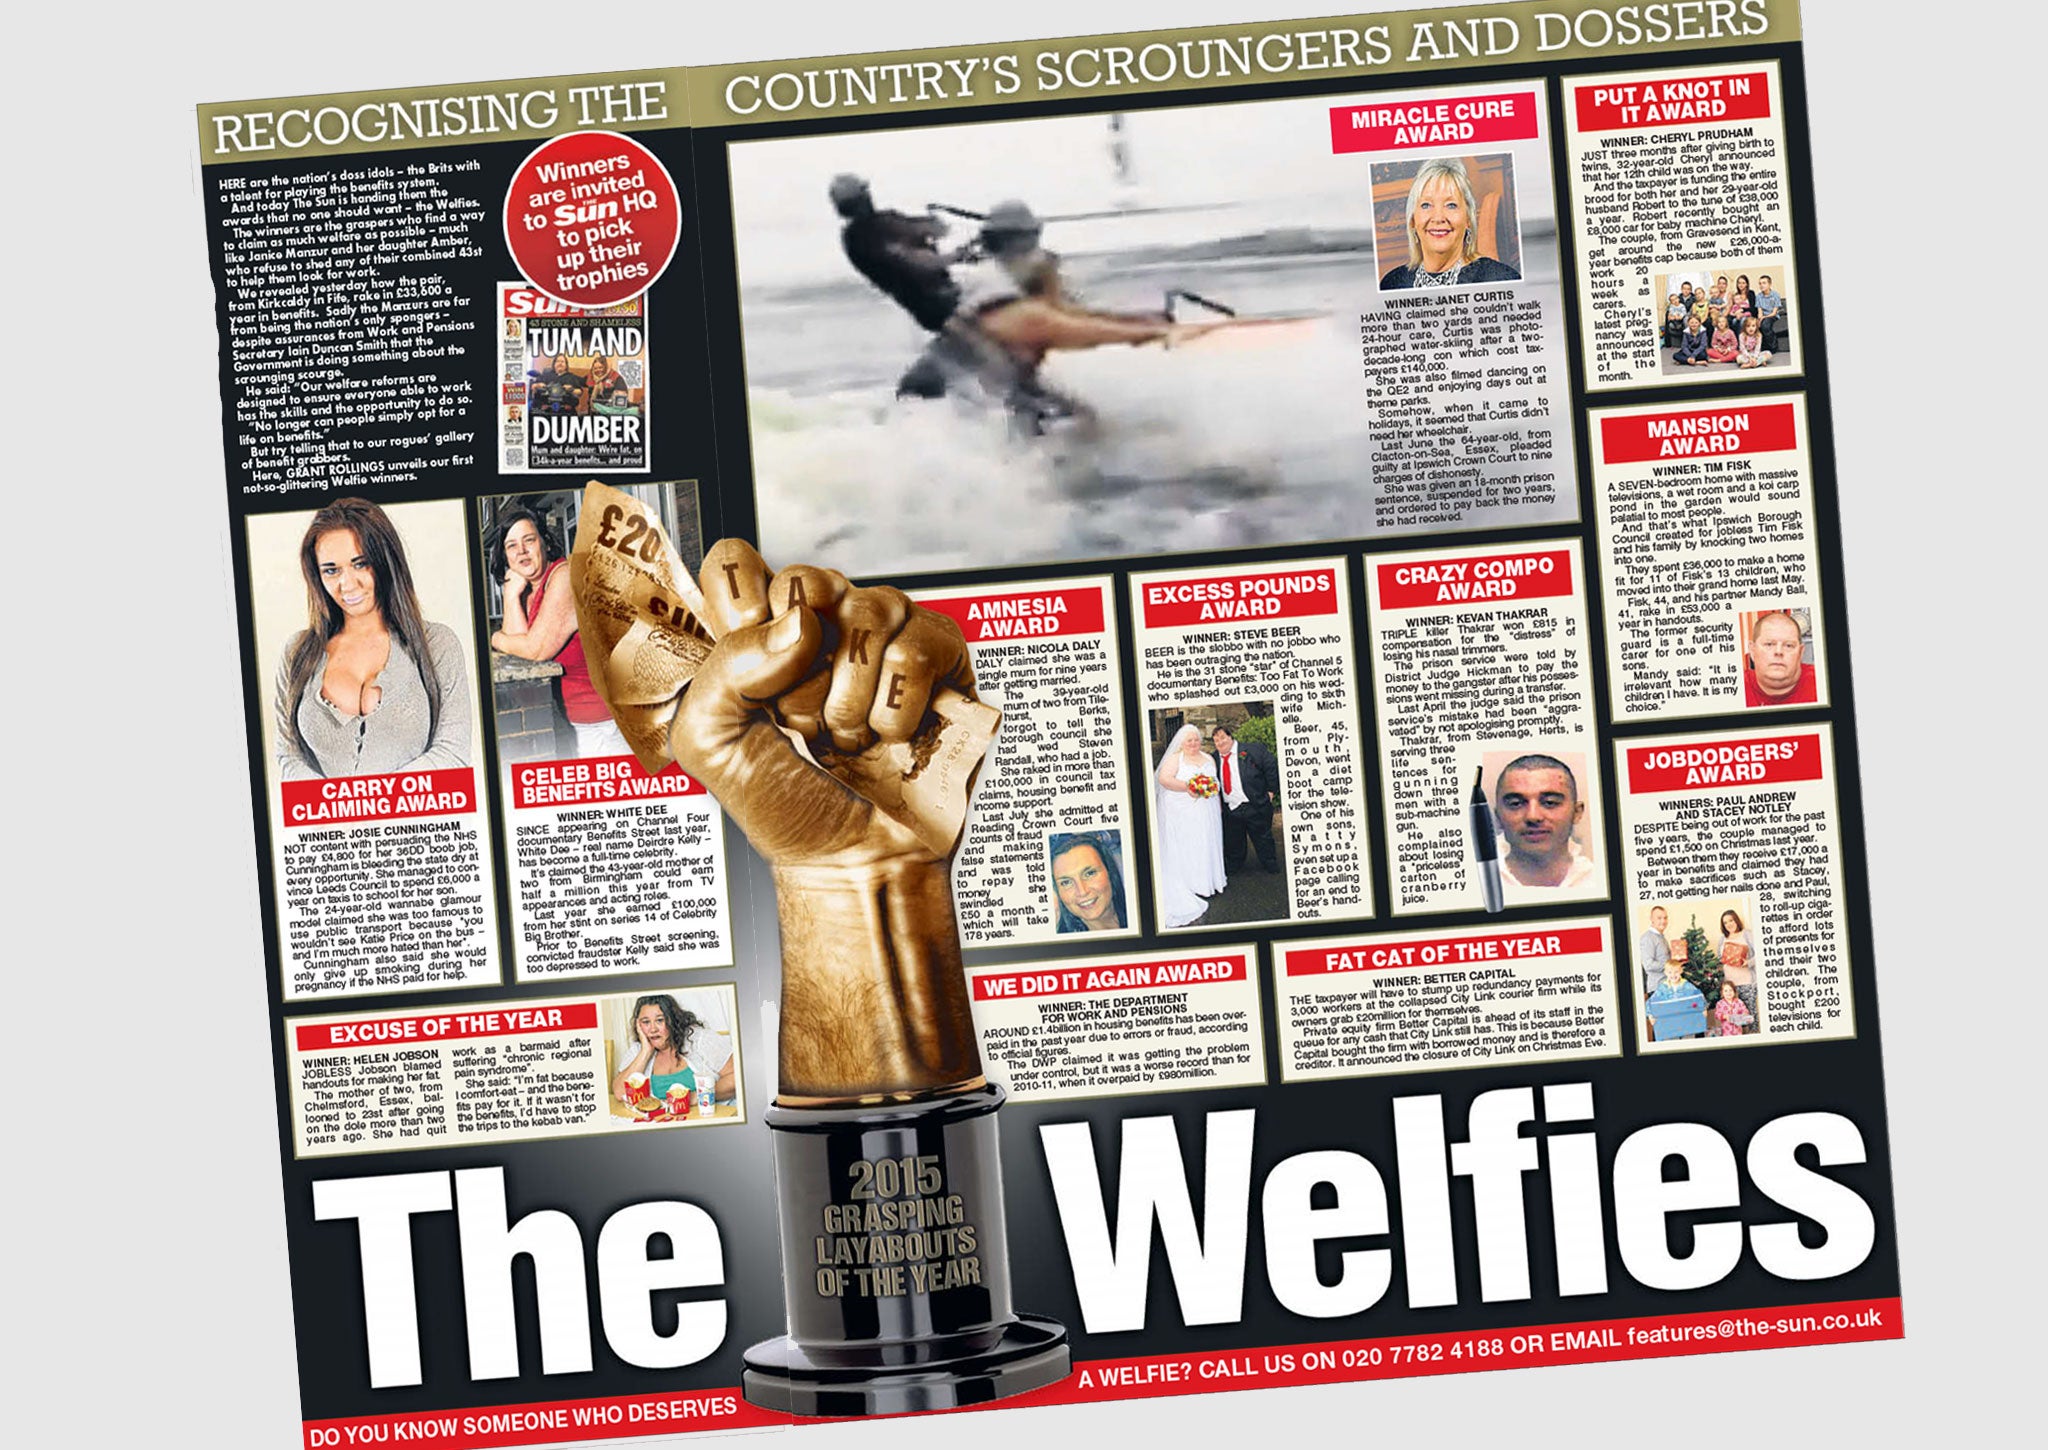 The Sun's 'Welfies' awards